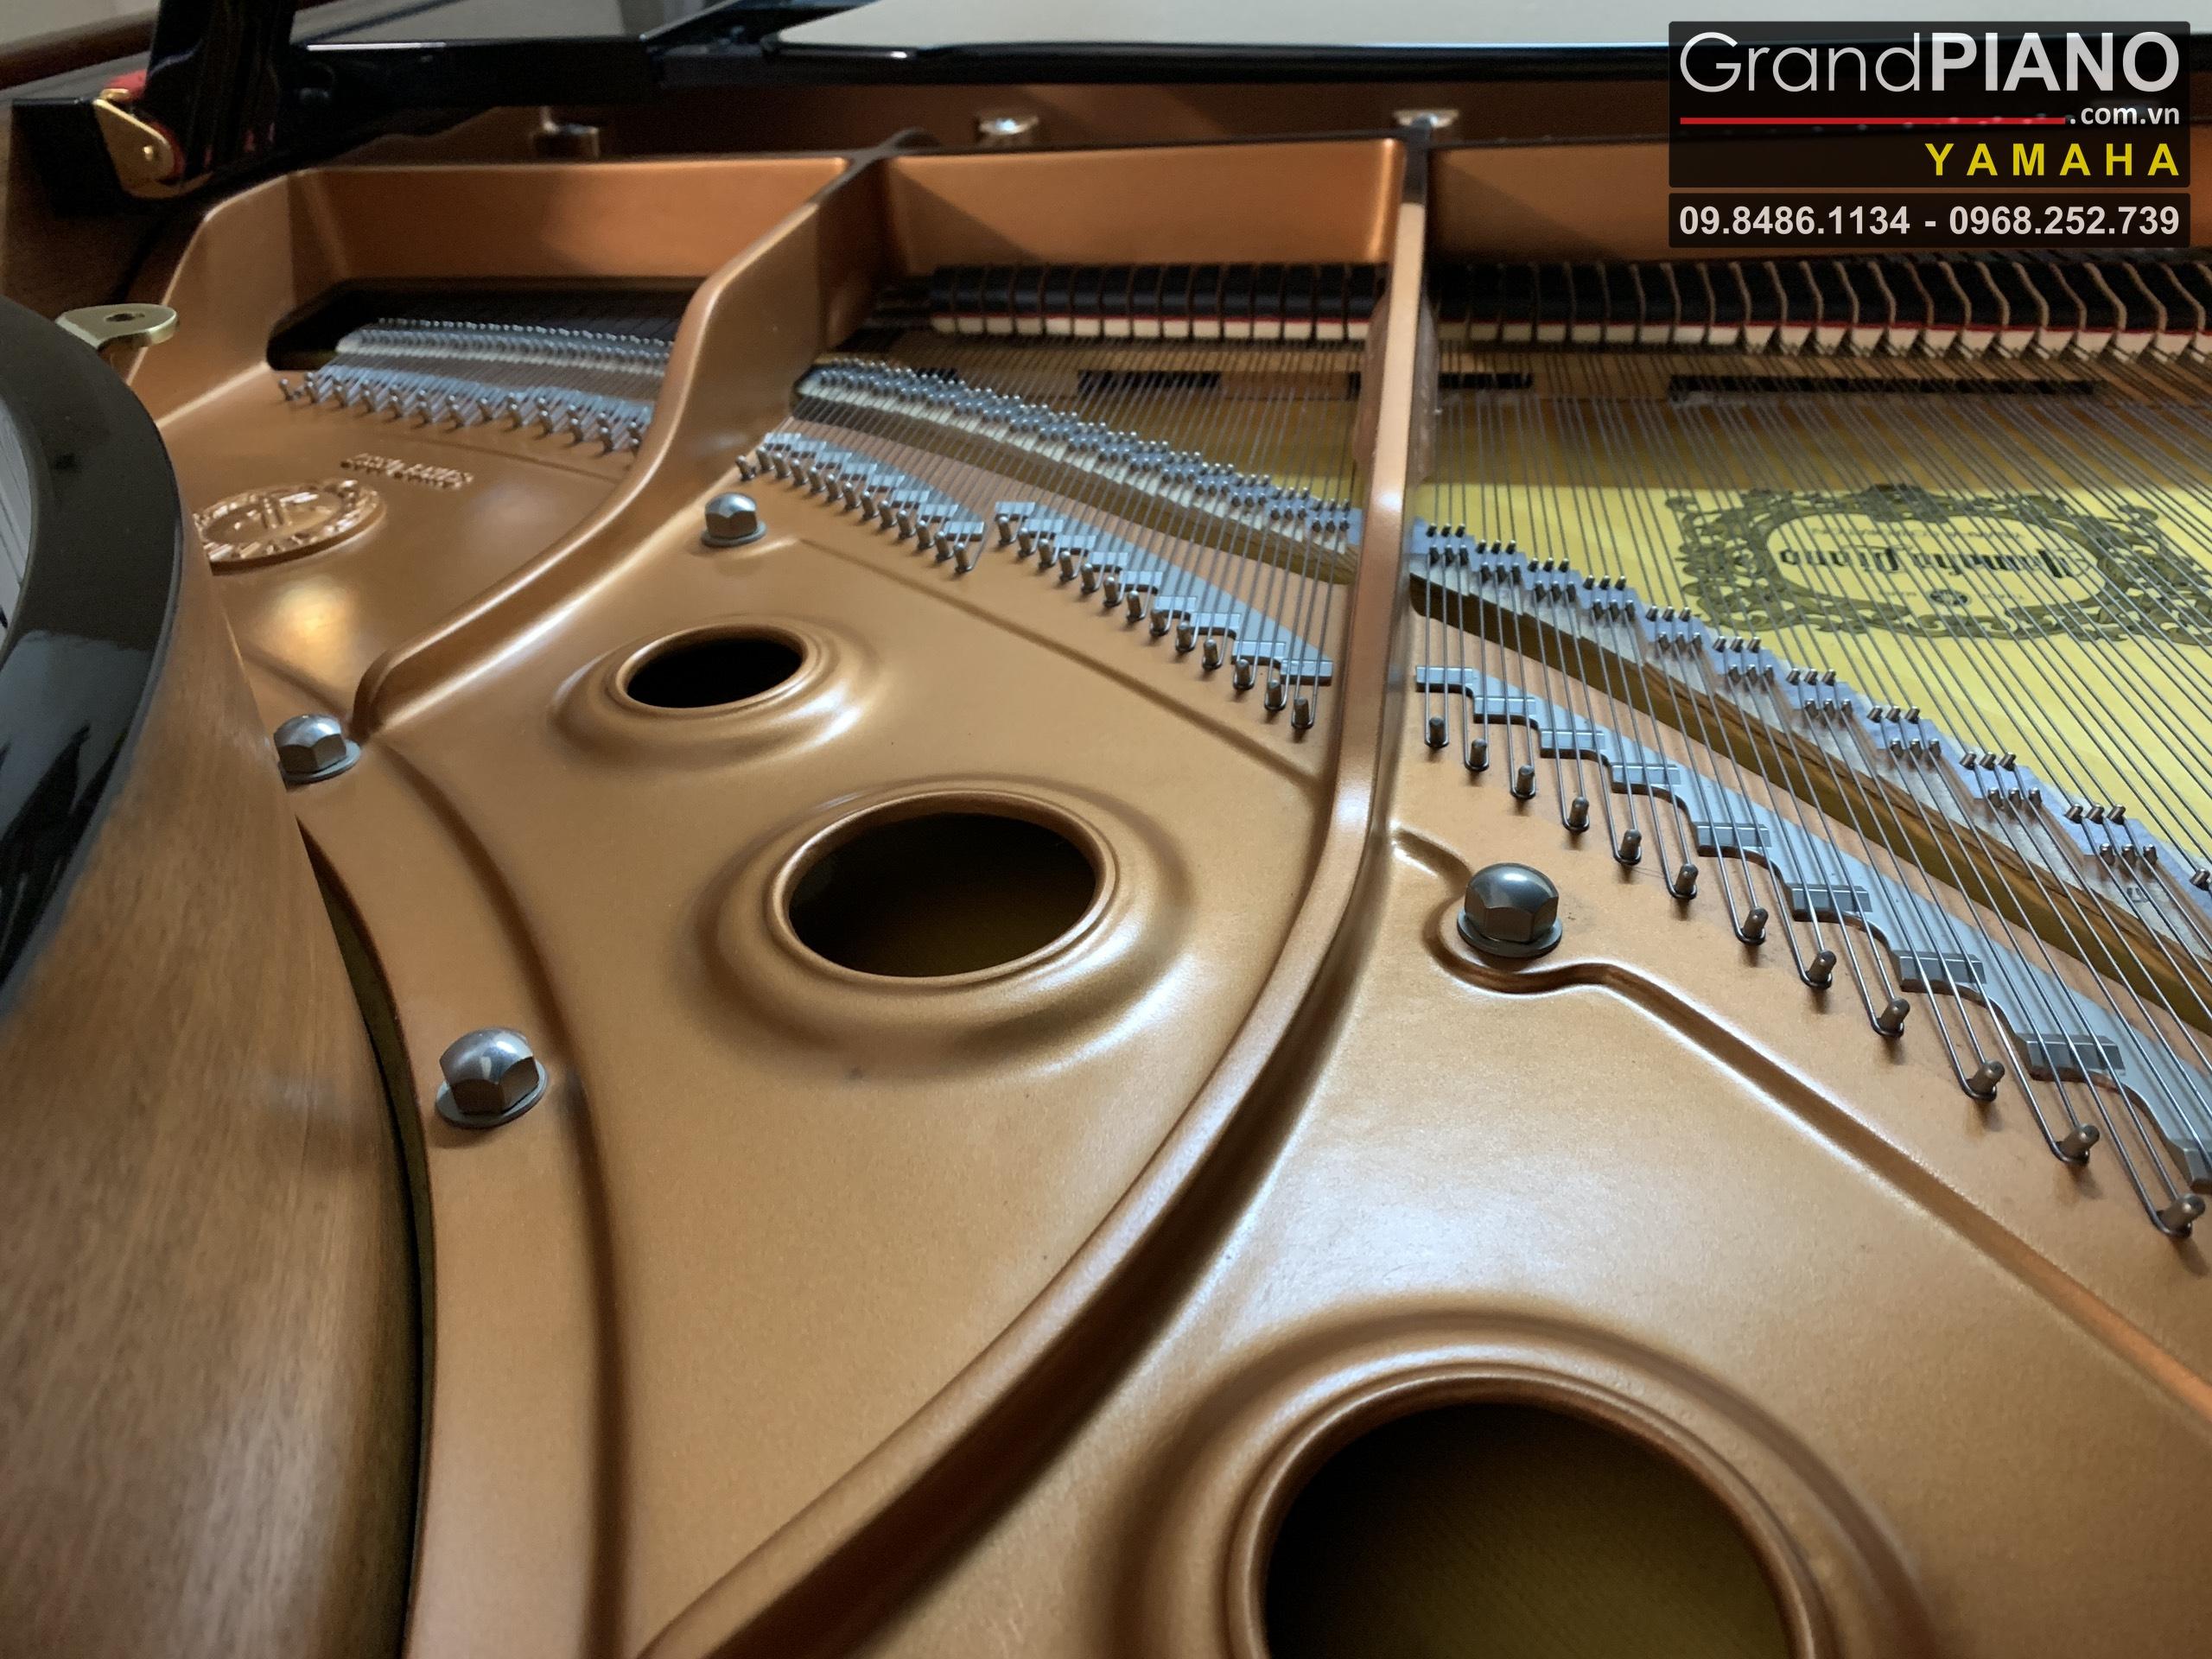 Dan-Grand-PIANO-YAMAHA-C5-Seri6223471.-351d136470388e66d72931_GrandPIANO_result.jpg